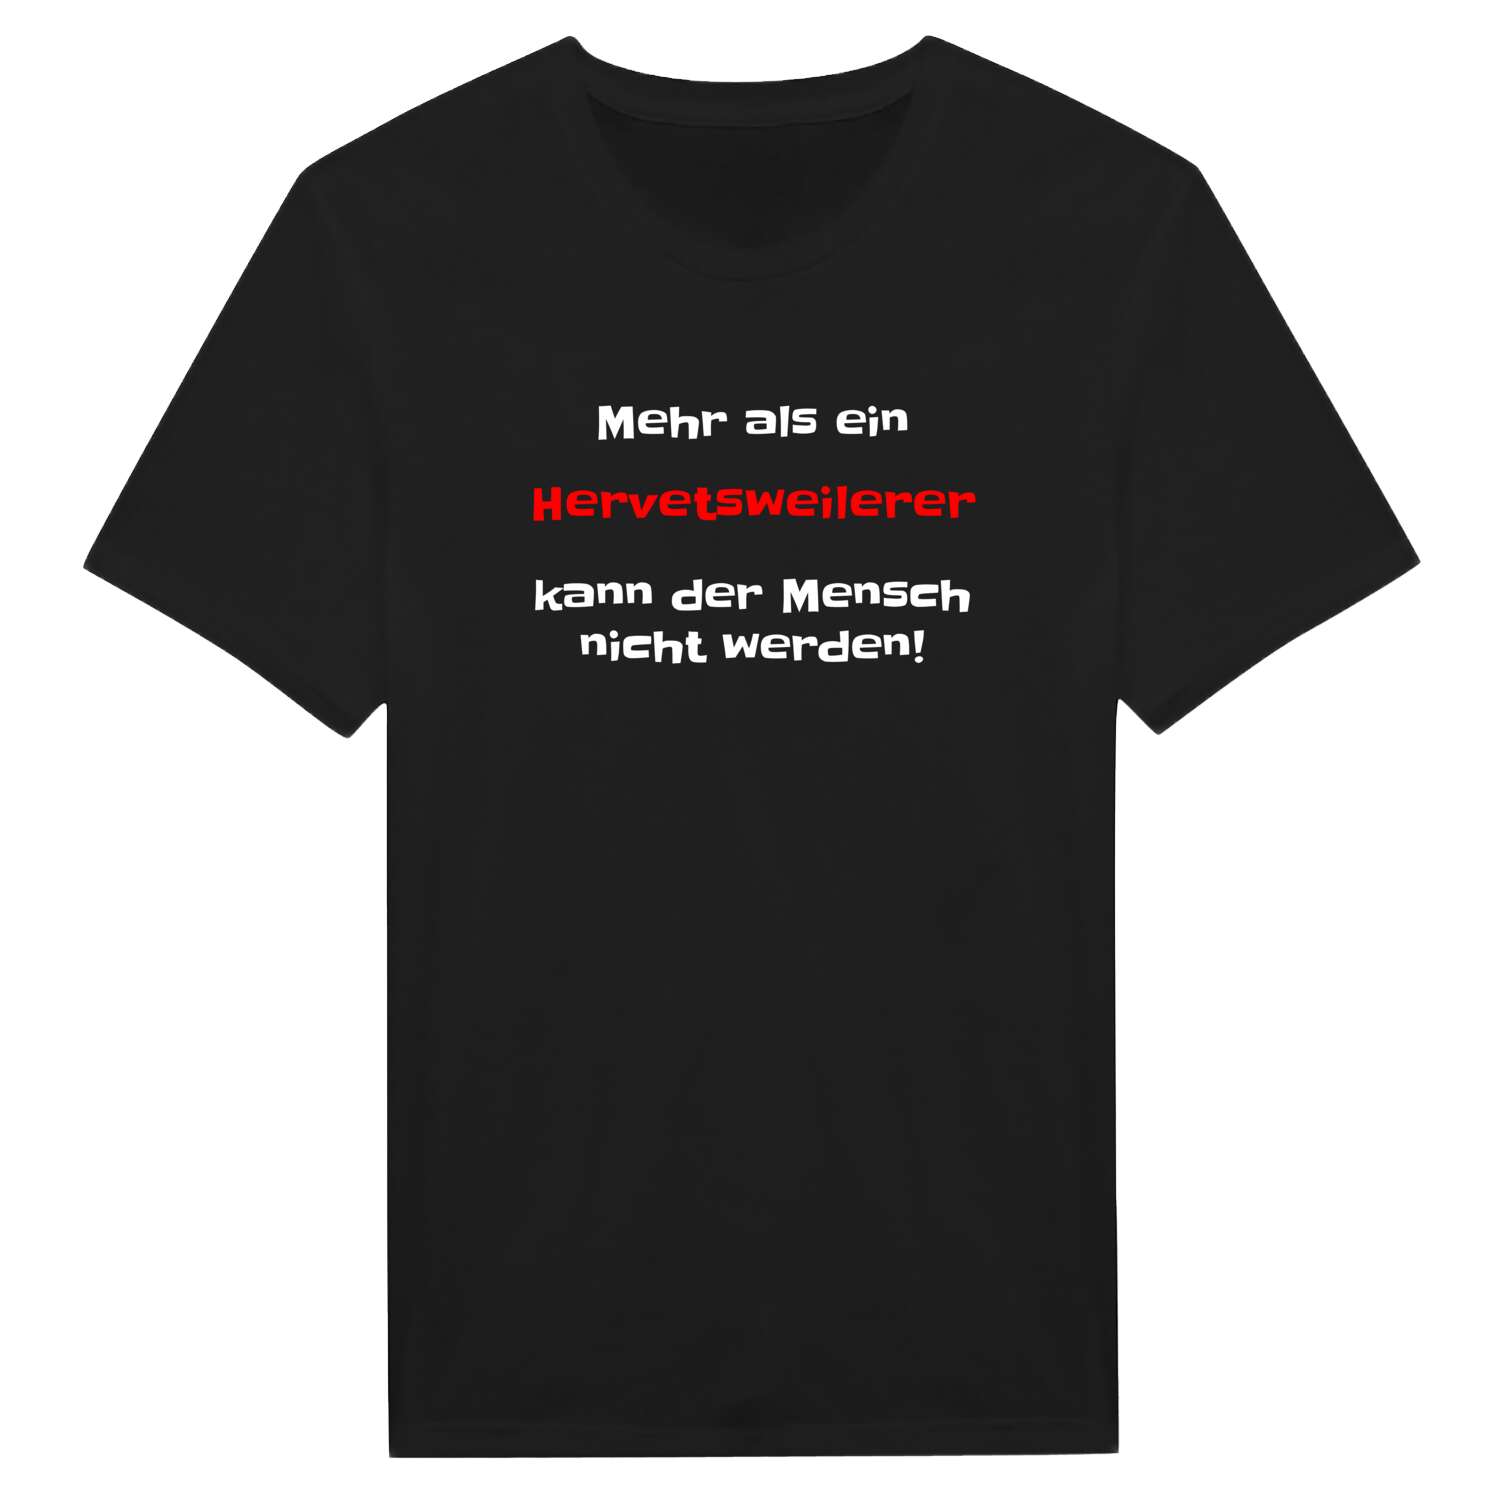 Hervetsweiler T-Shirt »Mehr als ein«